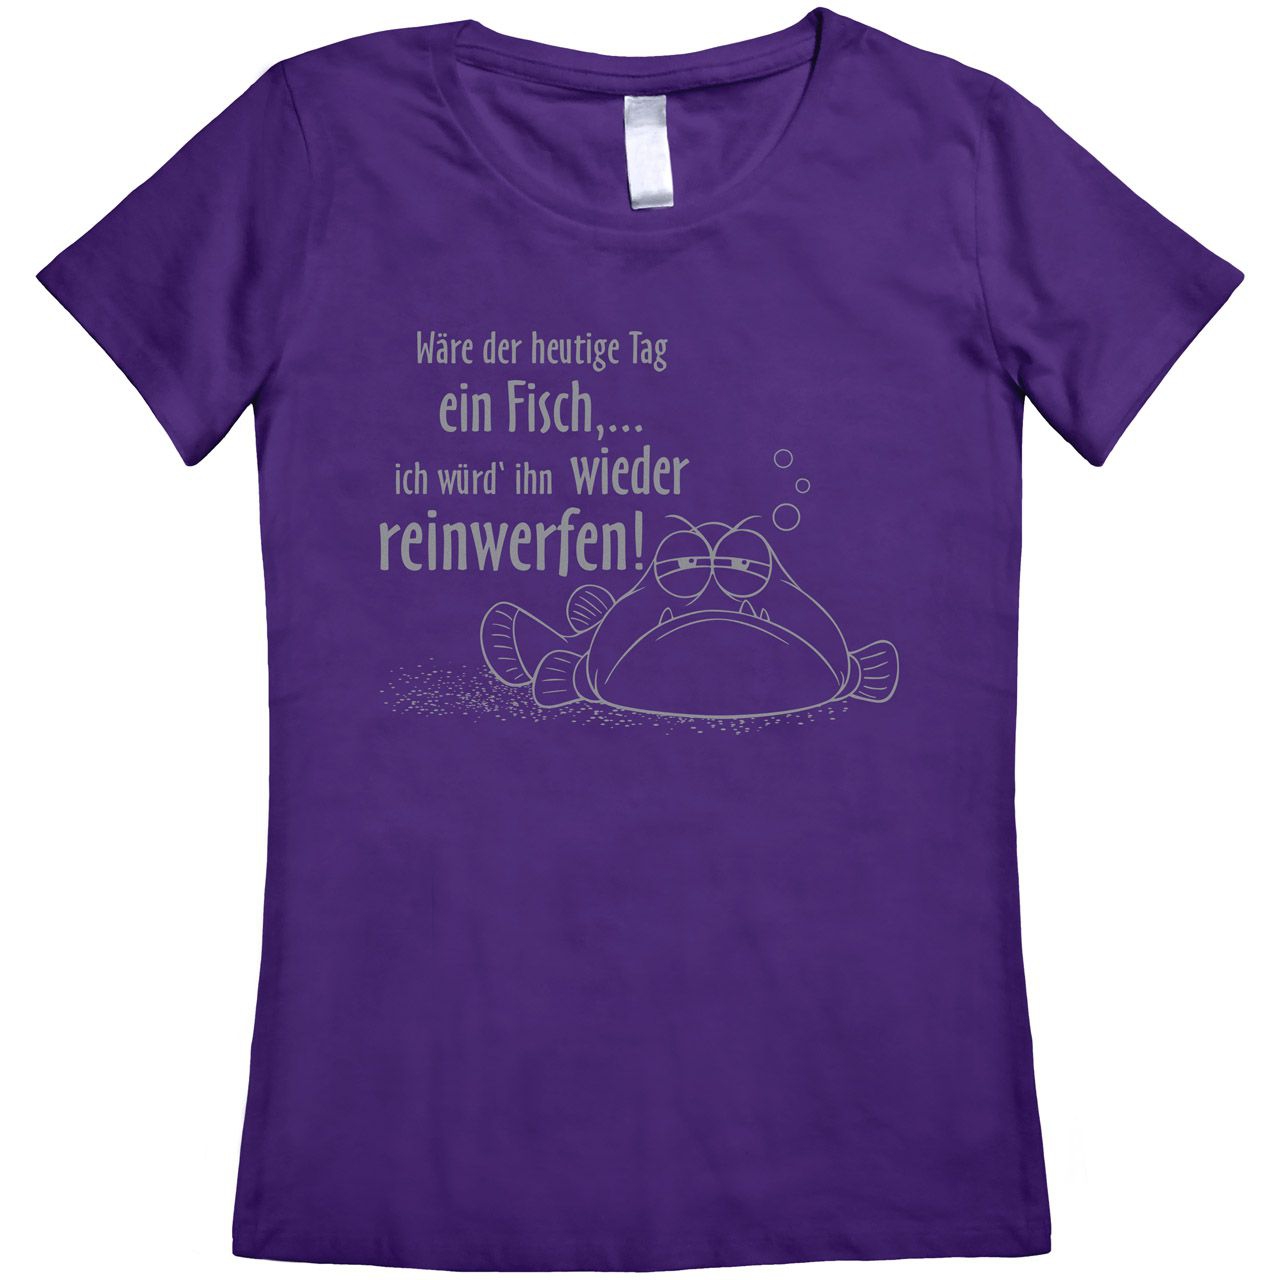 Wäre der heutige Tag ein Fisch Woman T-Shirt lila Medium